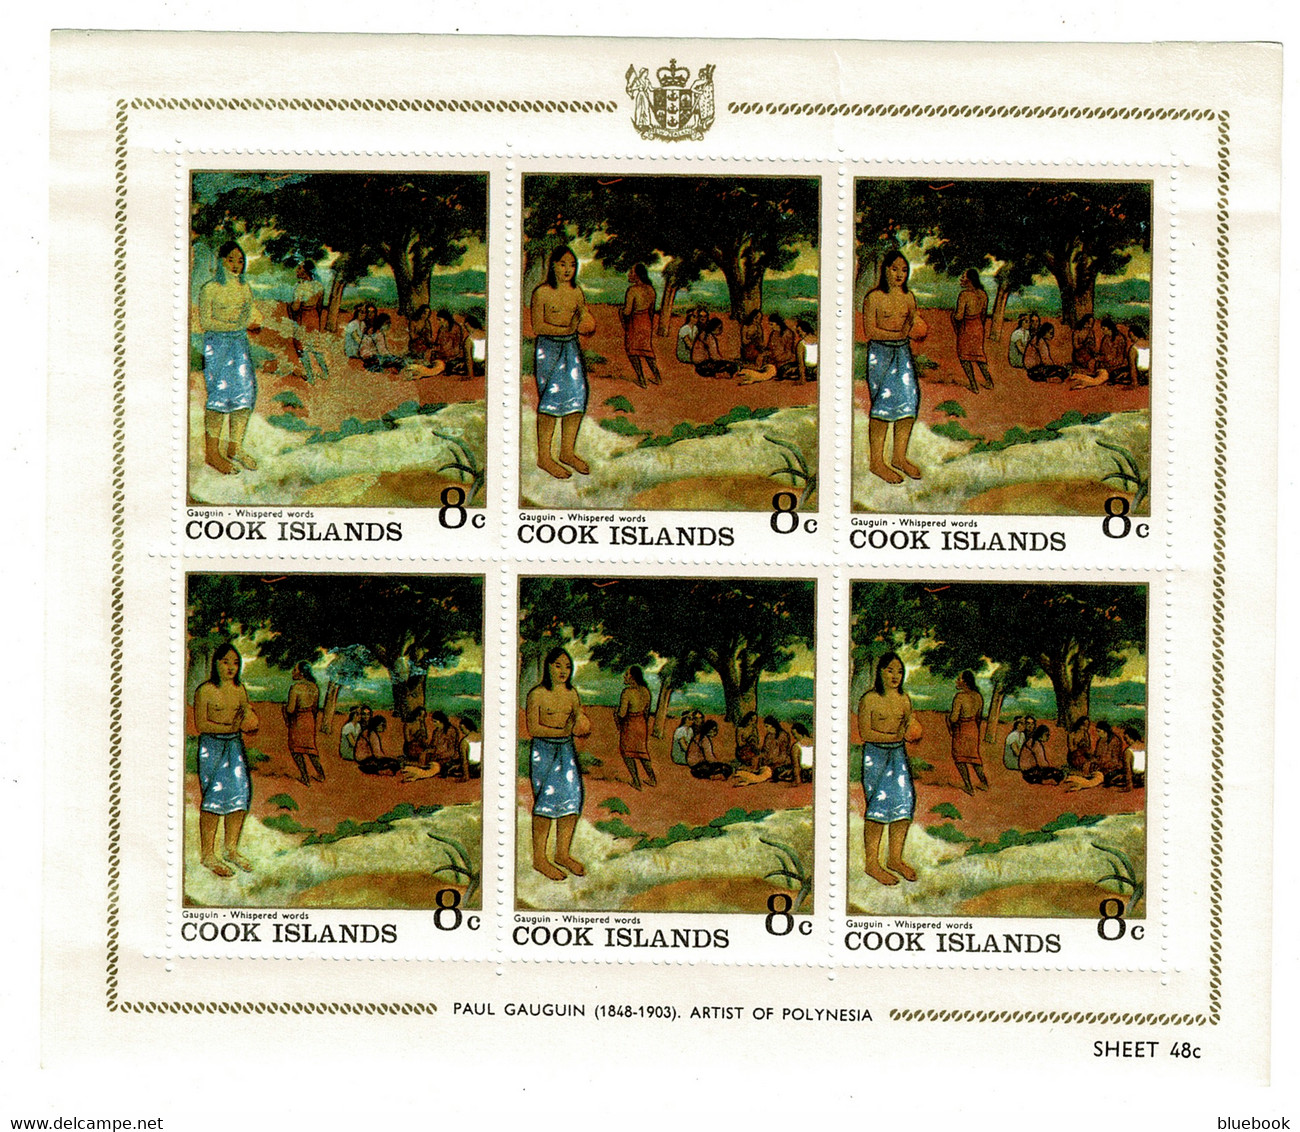 Ref 1474  - Cook Islands - 7 X Miniature Sheets MHH - Paul Gauguin Artist - Art Theme - Cook